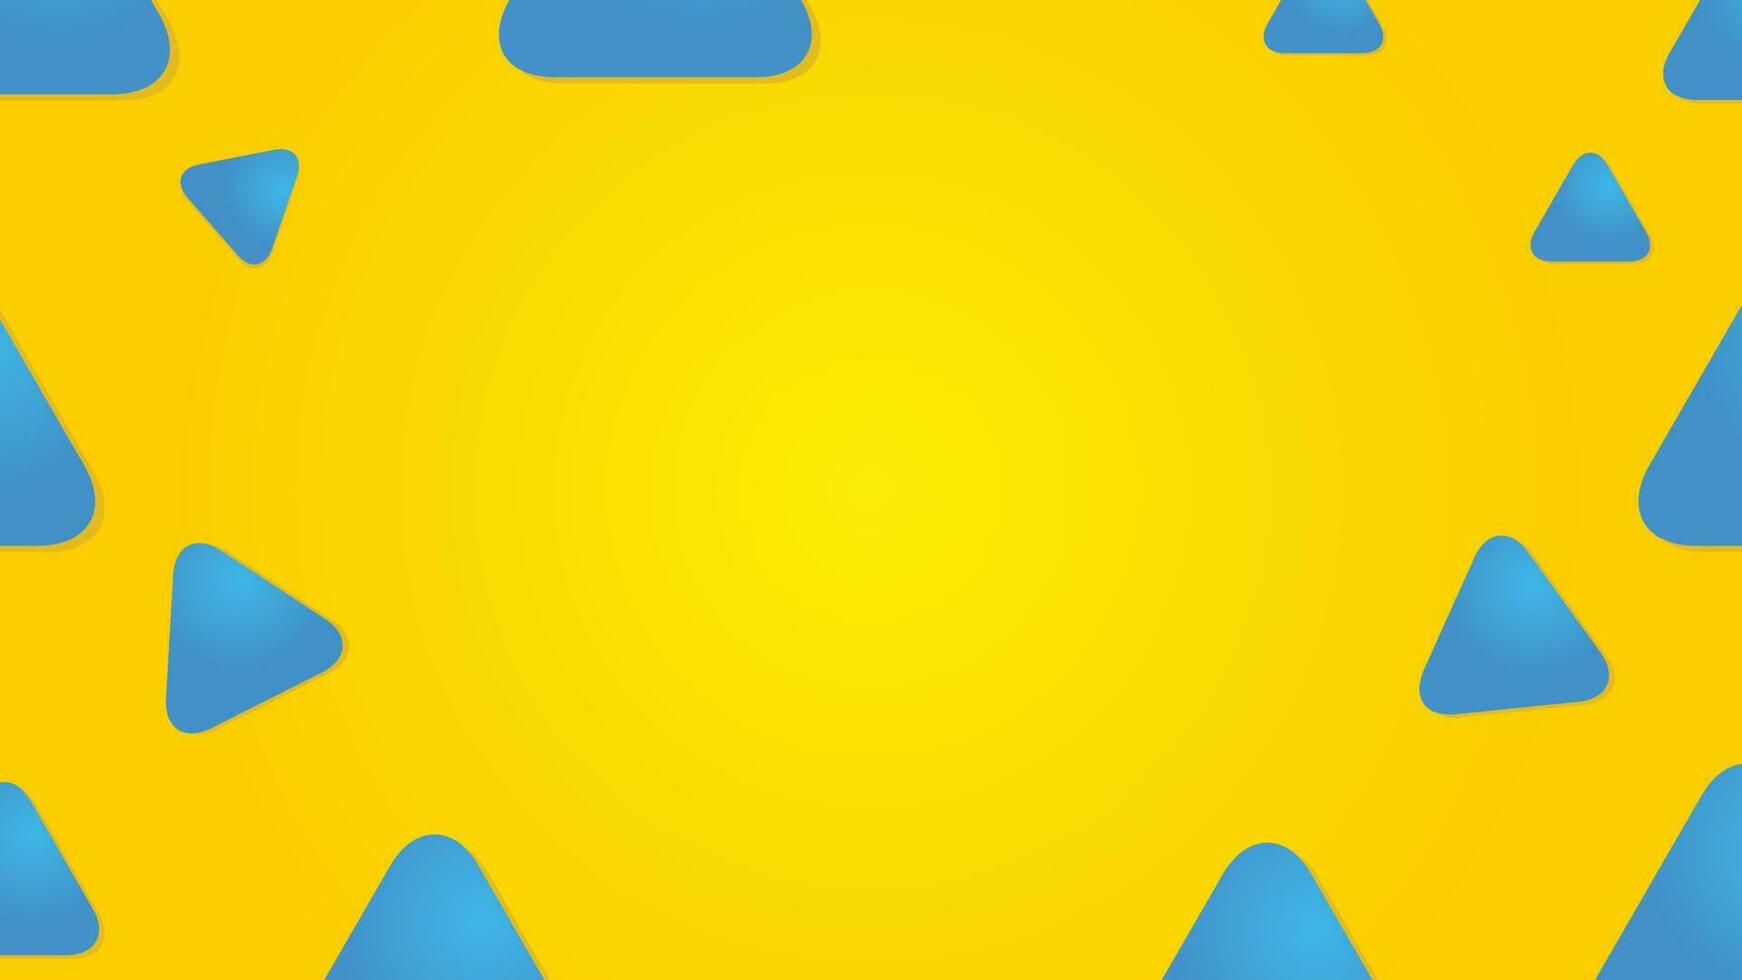 azul triângulos em amarelo vetor